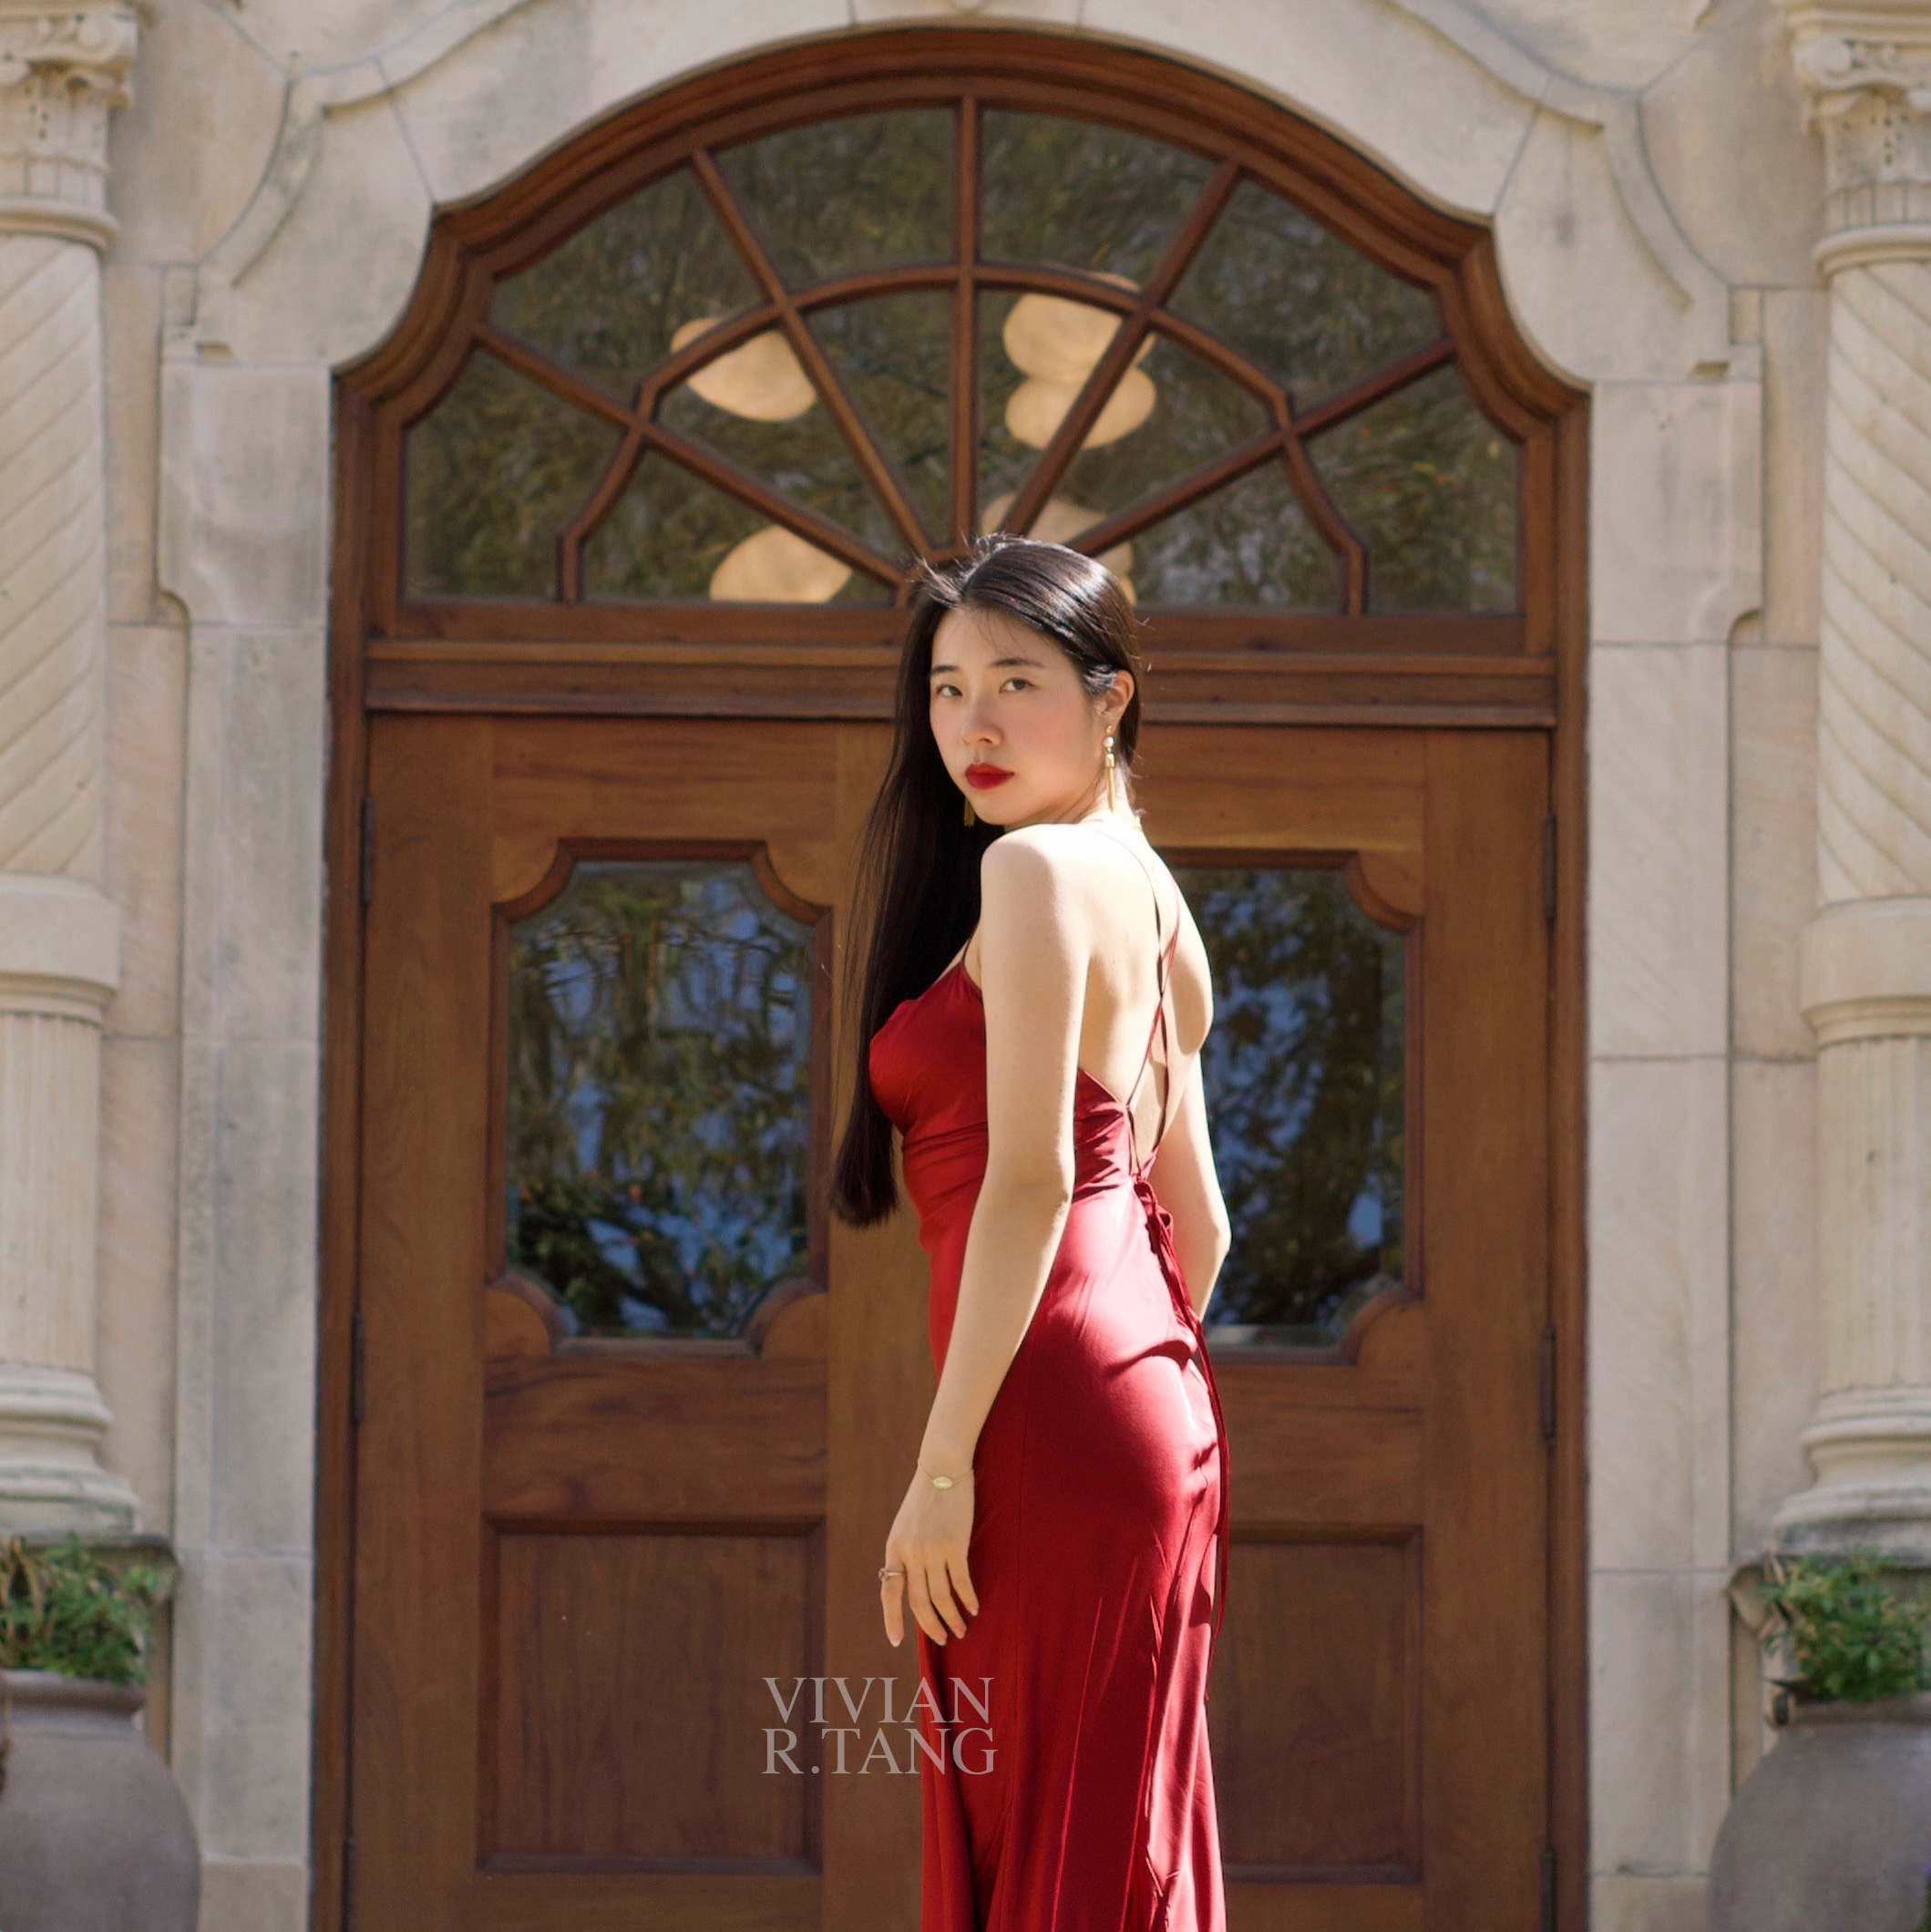 vivian r tang silk maison red dress